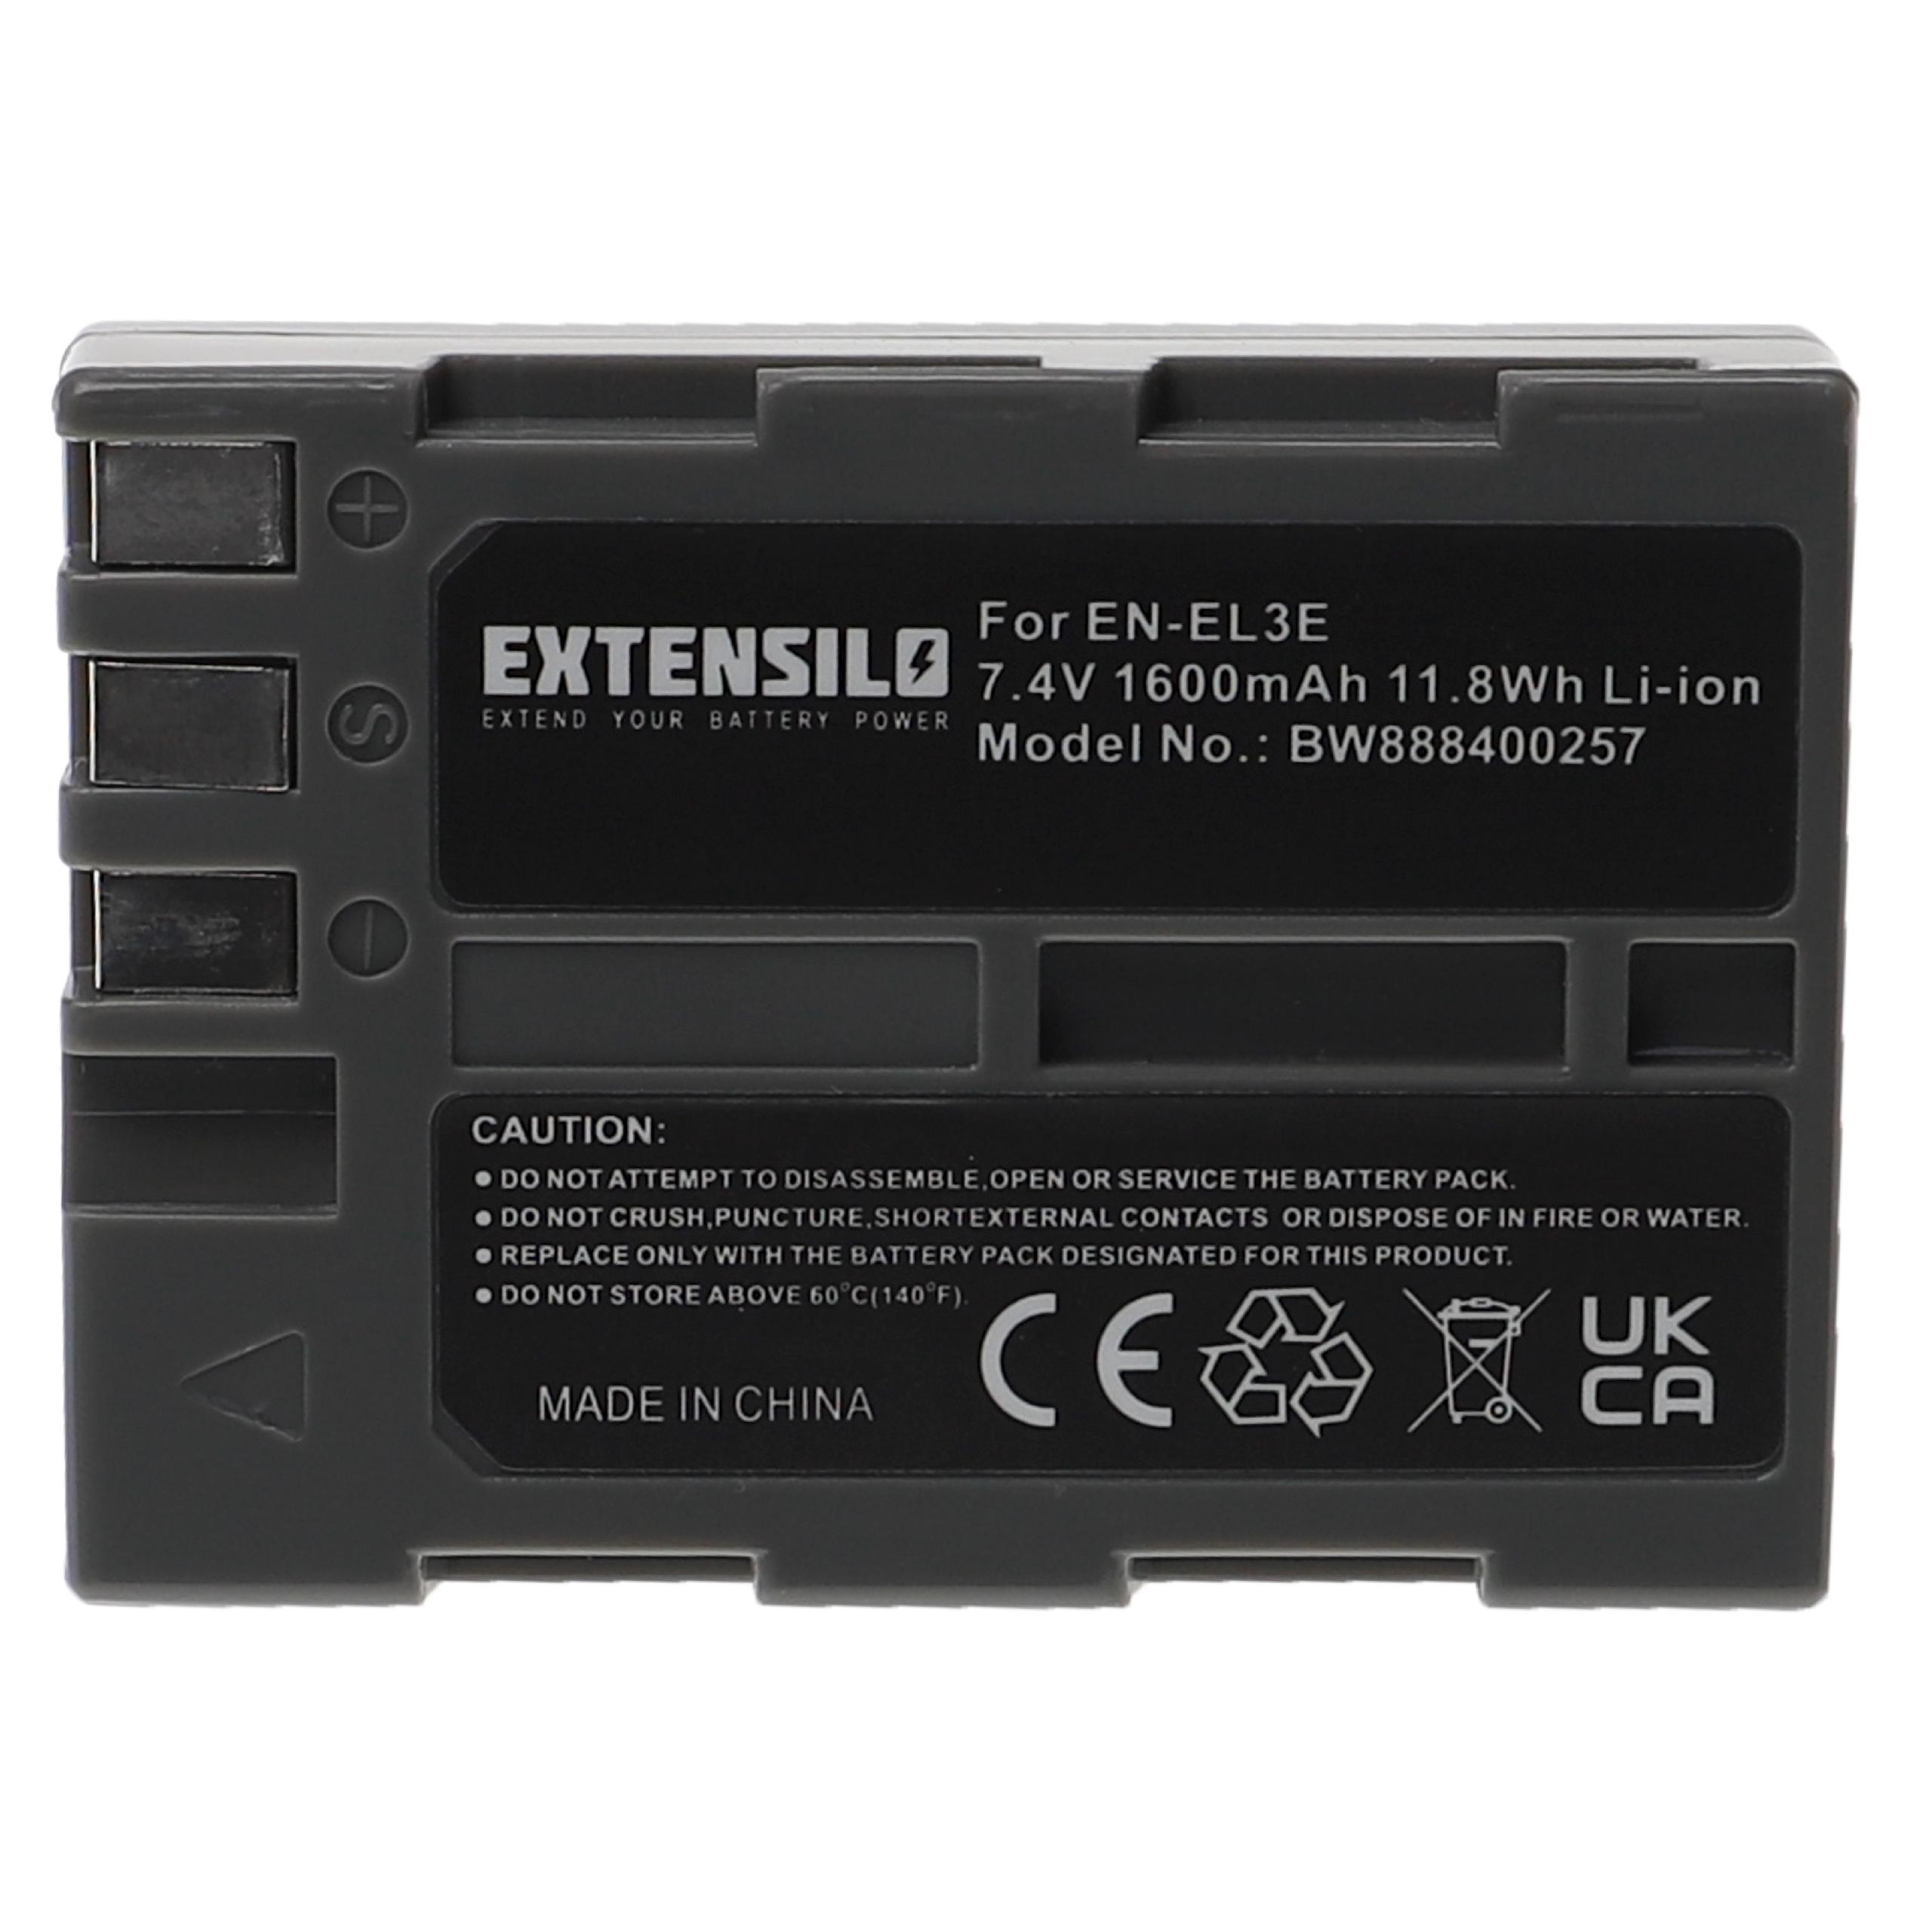 Battery Replacement for Nikon EN-EL3e - 1600mAh, 7.4V, Li-Ion